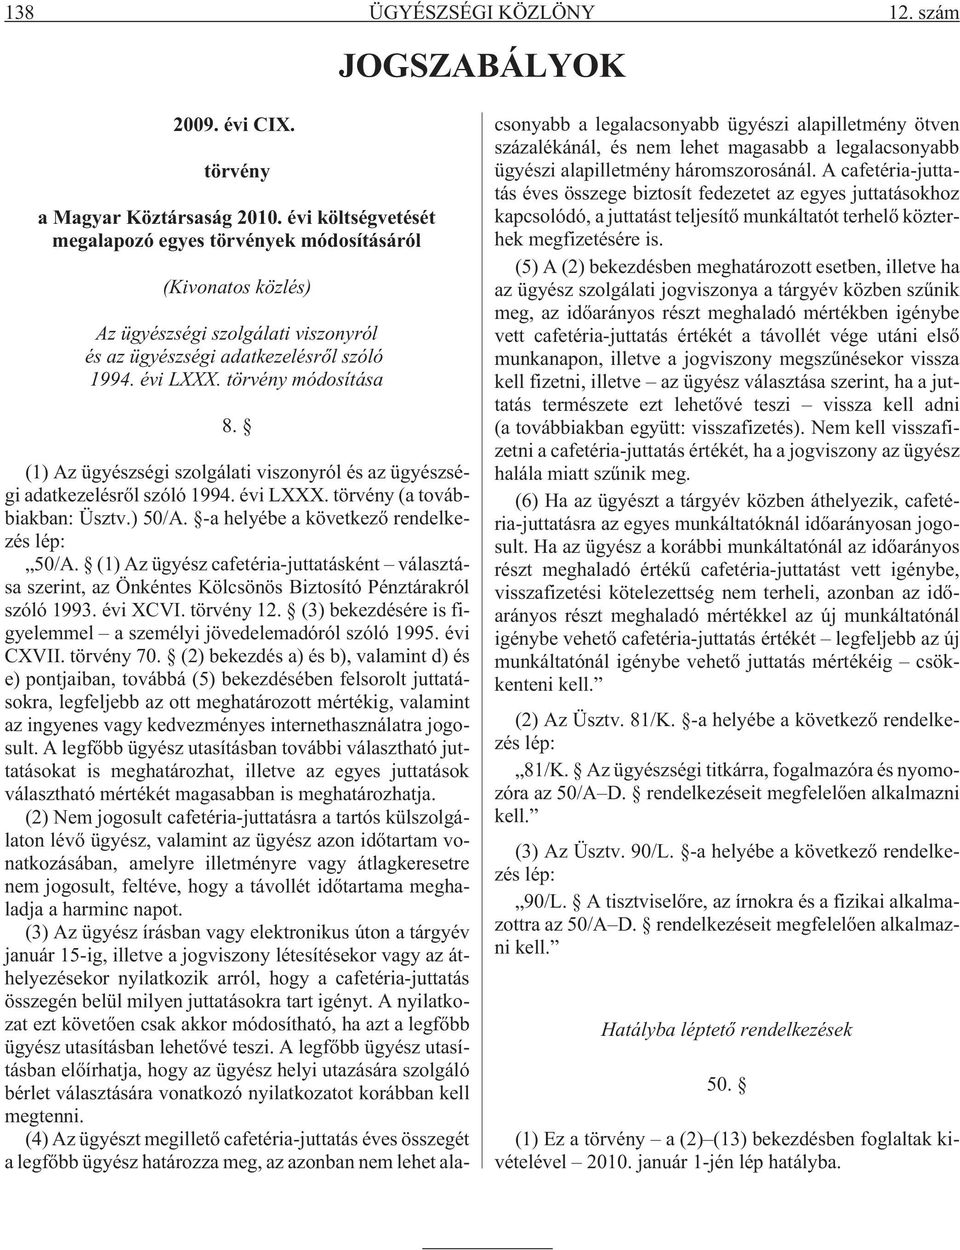 (1) Az ügyészségi szolgálati viszonyról és az ügyészségi adatkezelésrõl szóló 1994. évi LXXX. törvény (a továbbiakban: Üsztv.) 50/A. -a helyébe a következõ rendelkezés lép: 50/A.